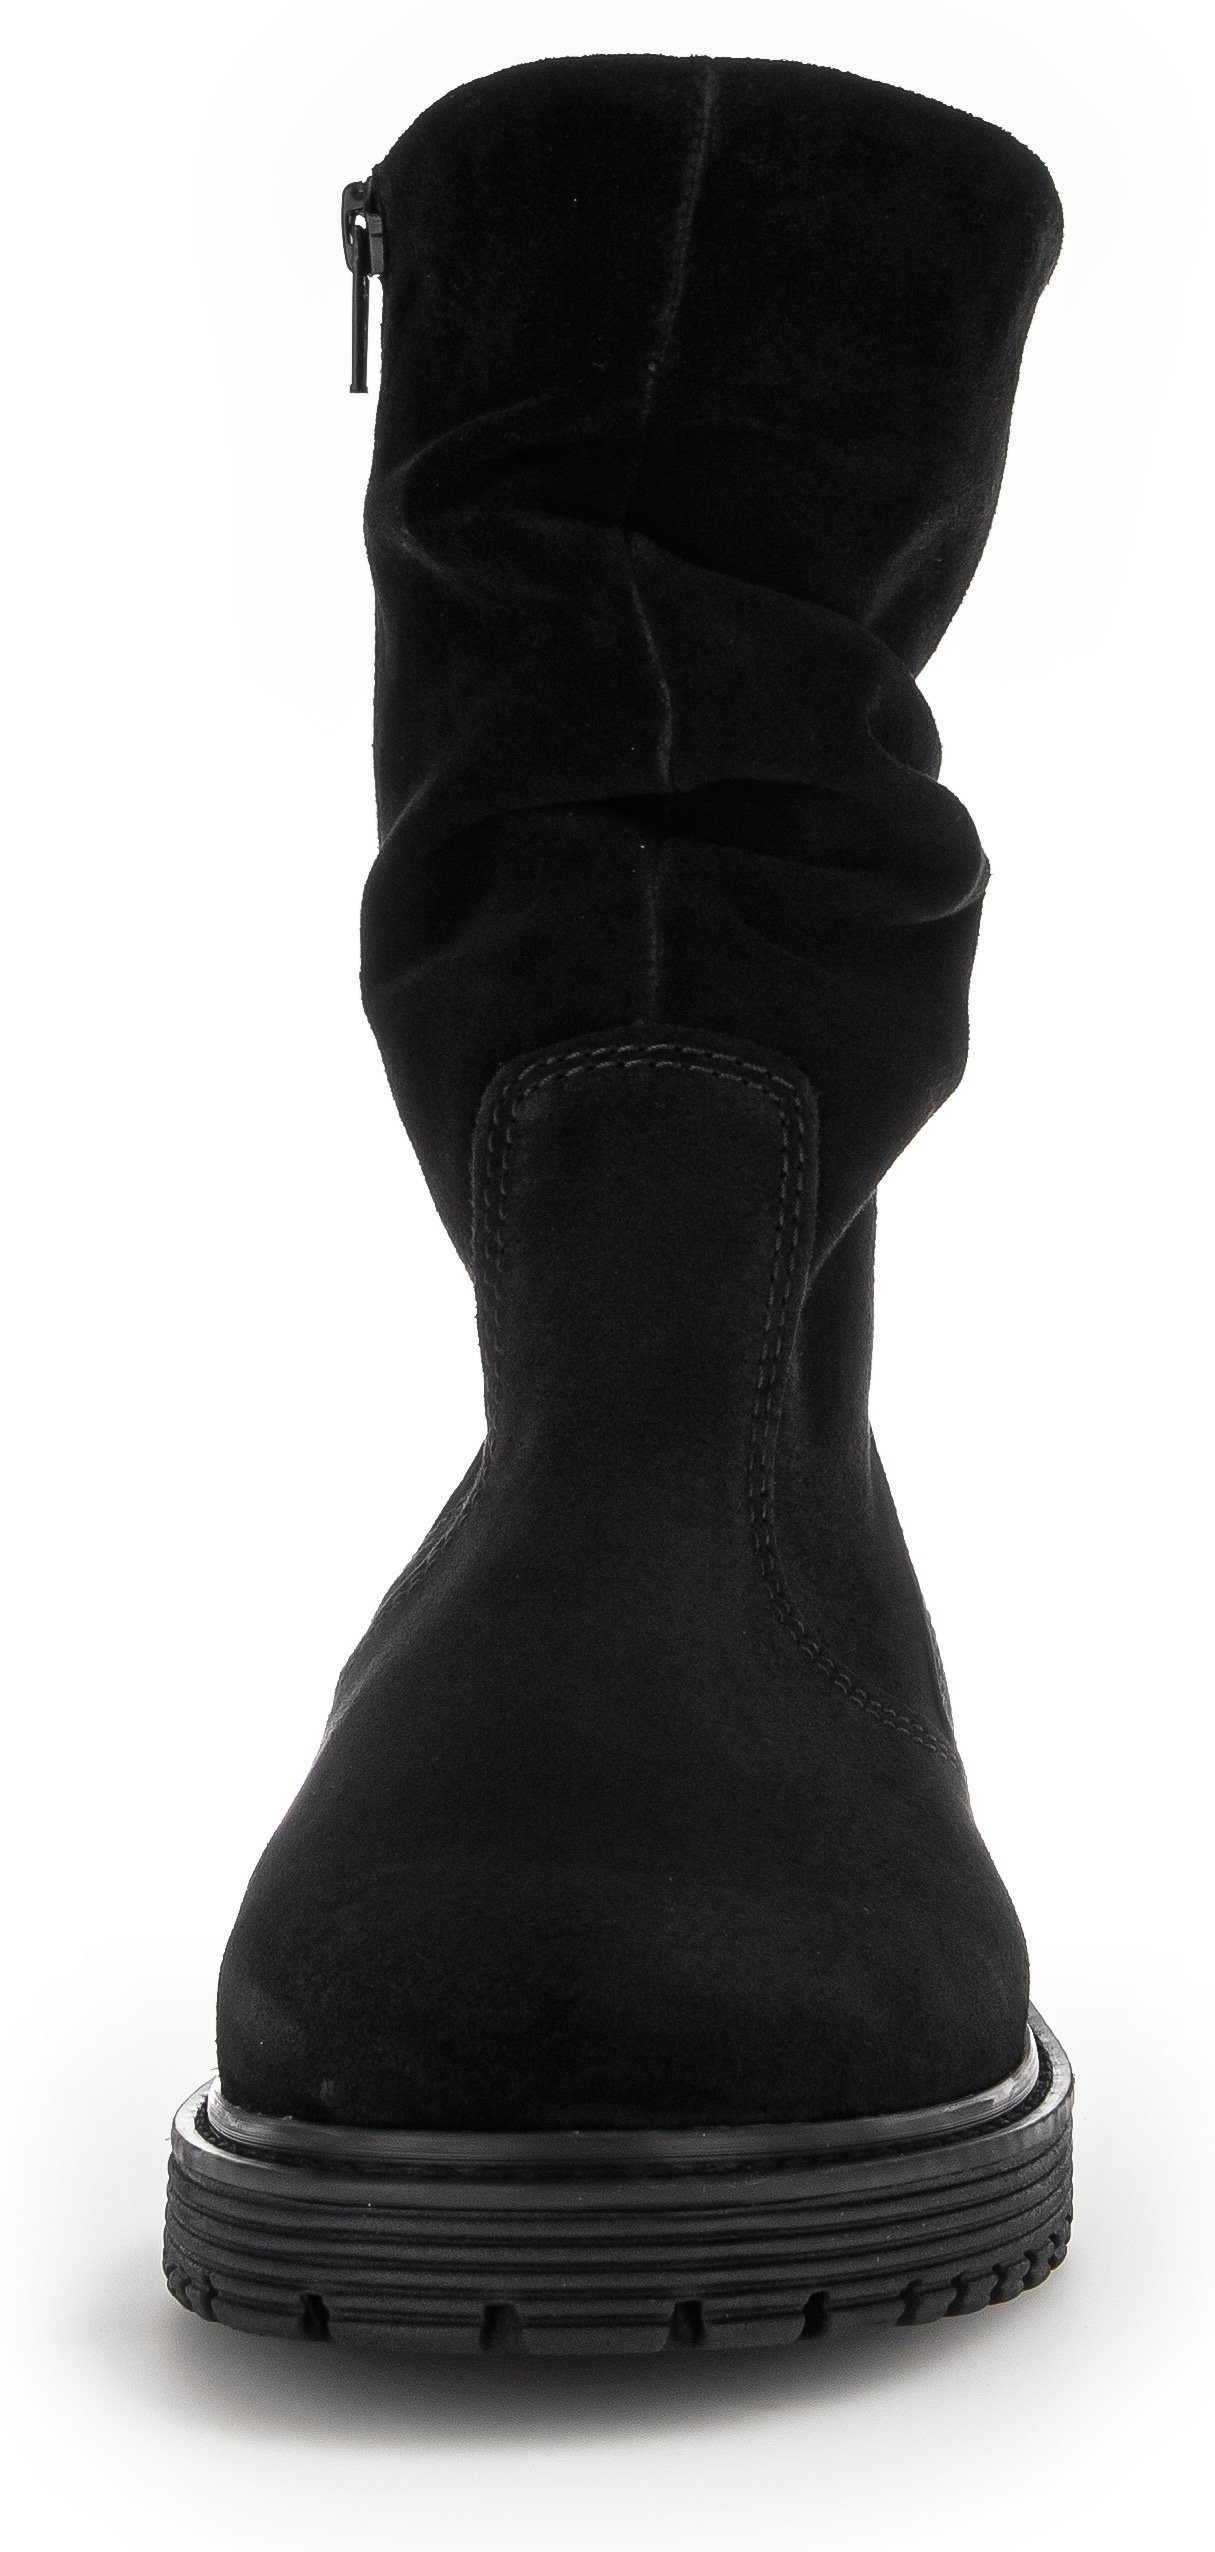 Gabor Florenz Stiefel im Look, schwarz am Schaft mit slouchy Falten